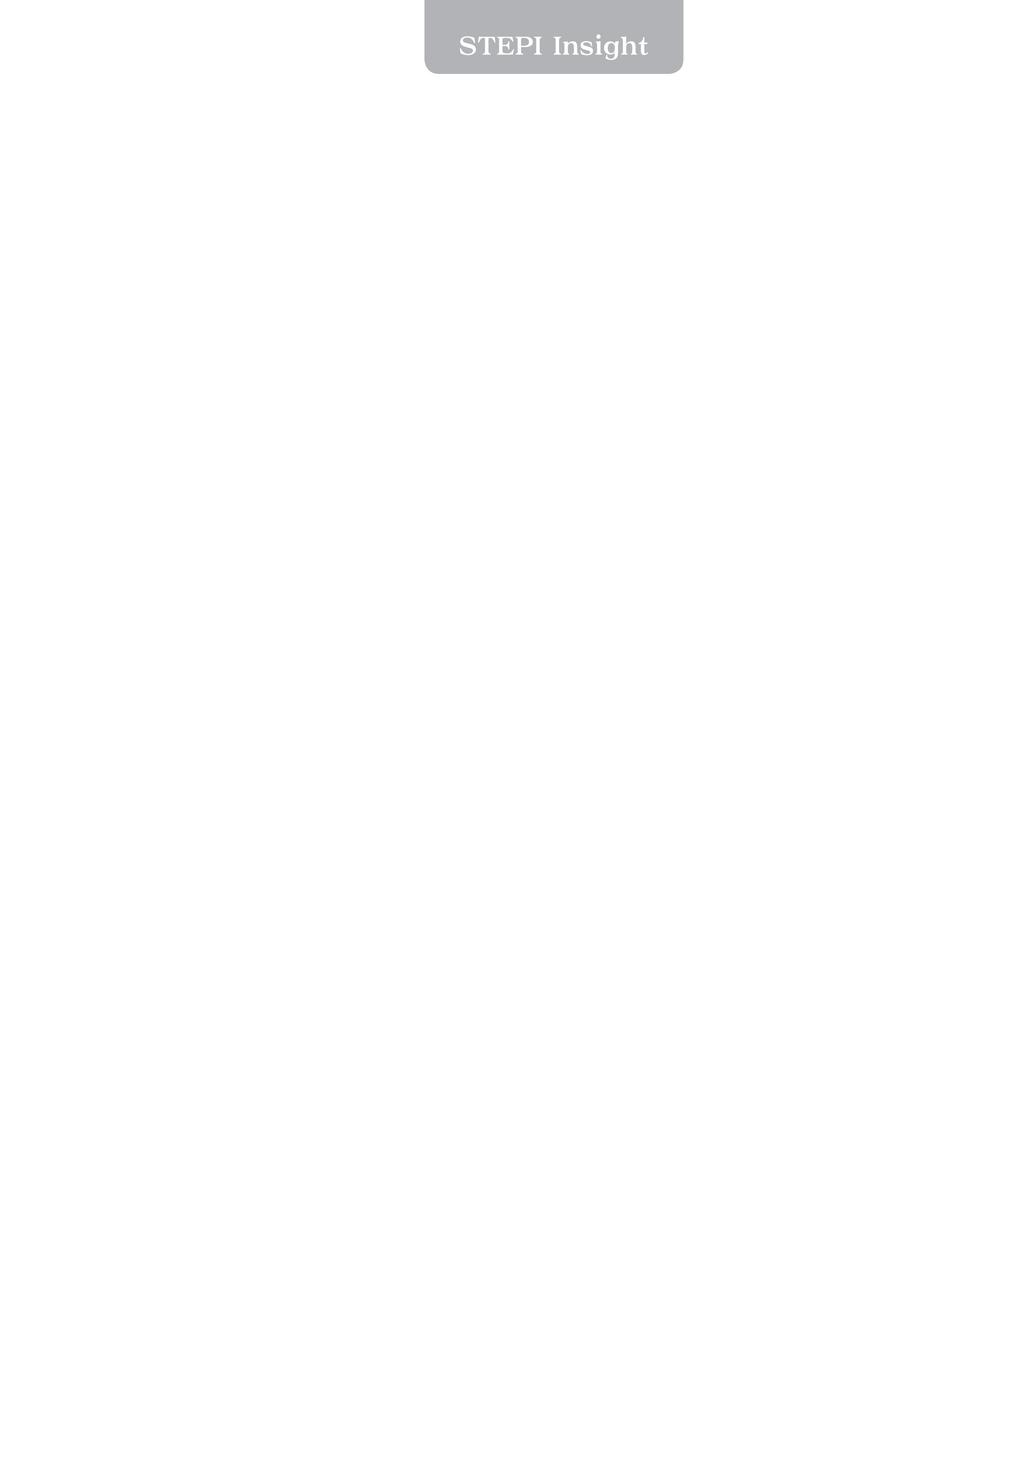 2012. 3. 15. 제 호 글로벌특허전쟁위기극복을위한대응방안 손수정 목차 < 요약 > Ⅰ. 배경및필요성 / 7 Ⅱ. 글로벌특허전쟁의의미와현황 / 9 Ⅲ.